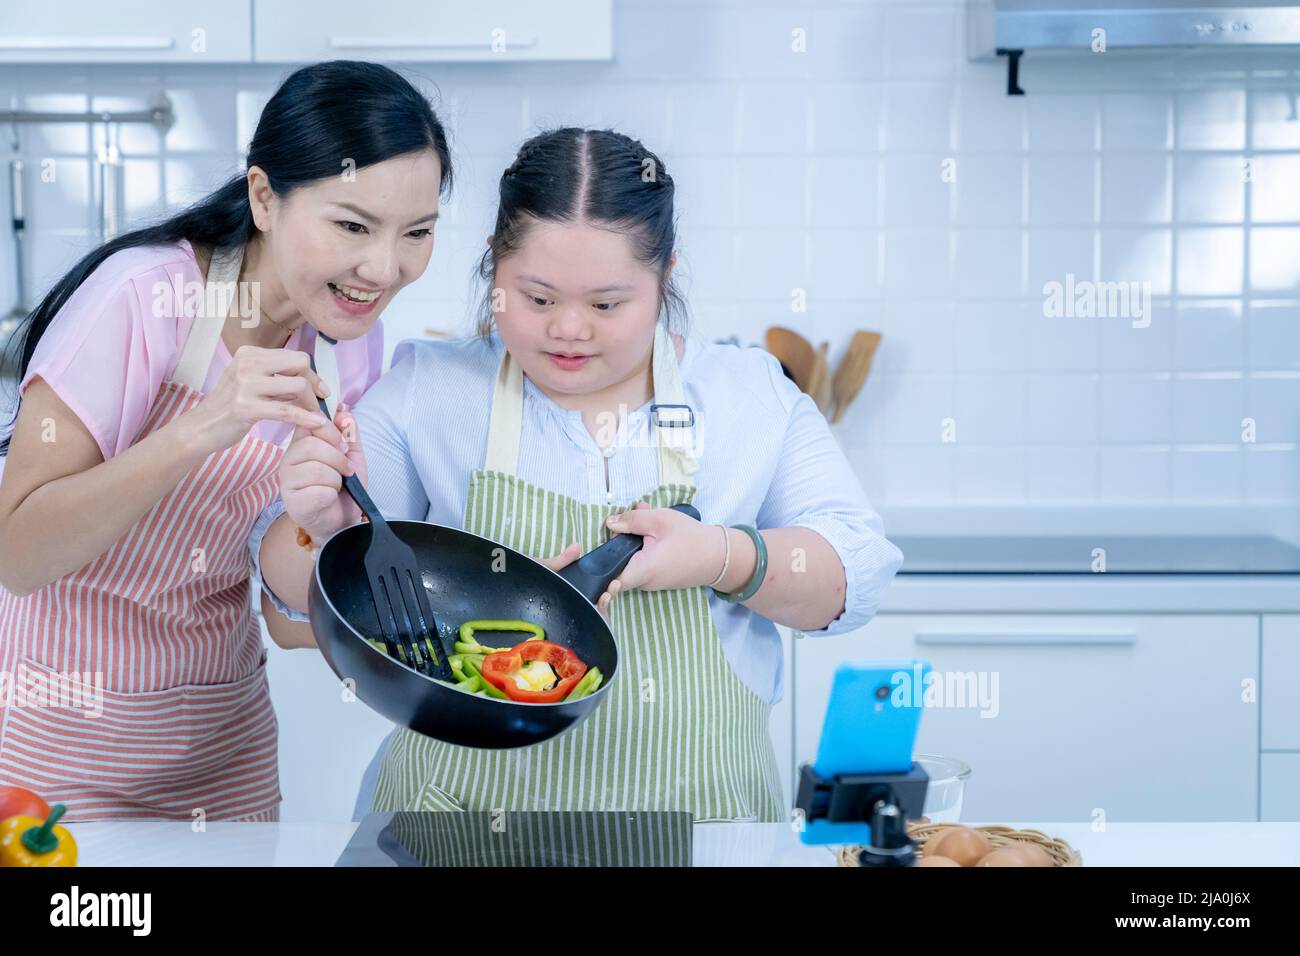 Asiatique personne avec le syndrome de Down cuisiner avec maman. Croissance du cerveau apprentissage famille amour intelligence cuisine Banque D'Images